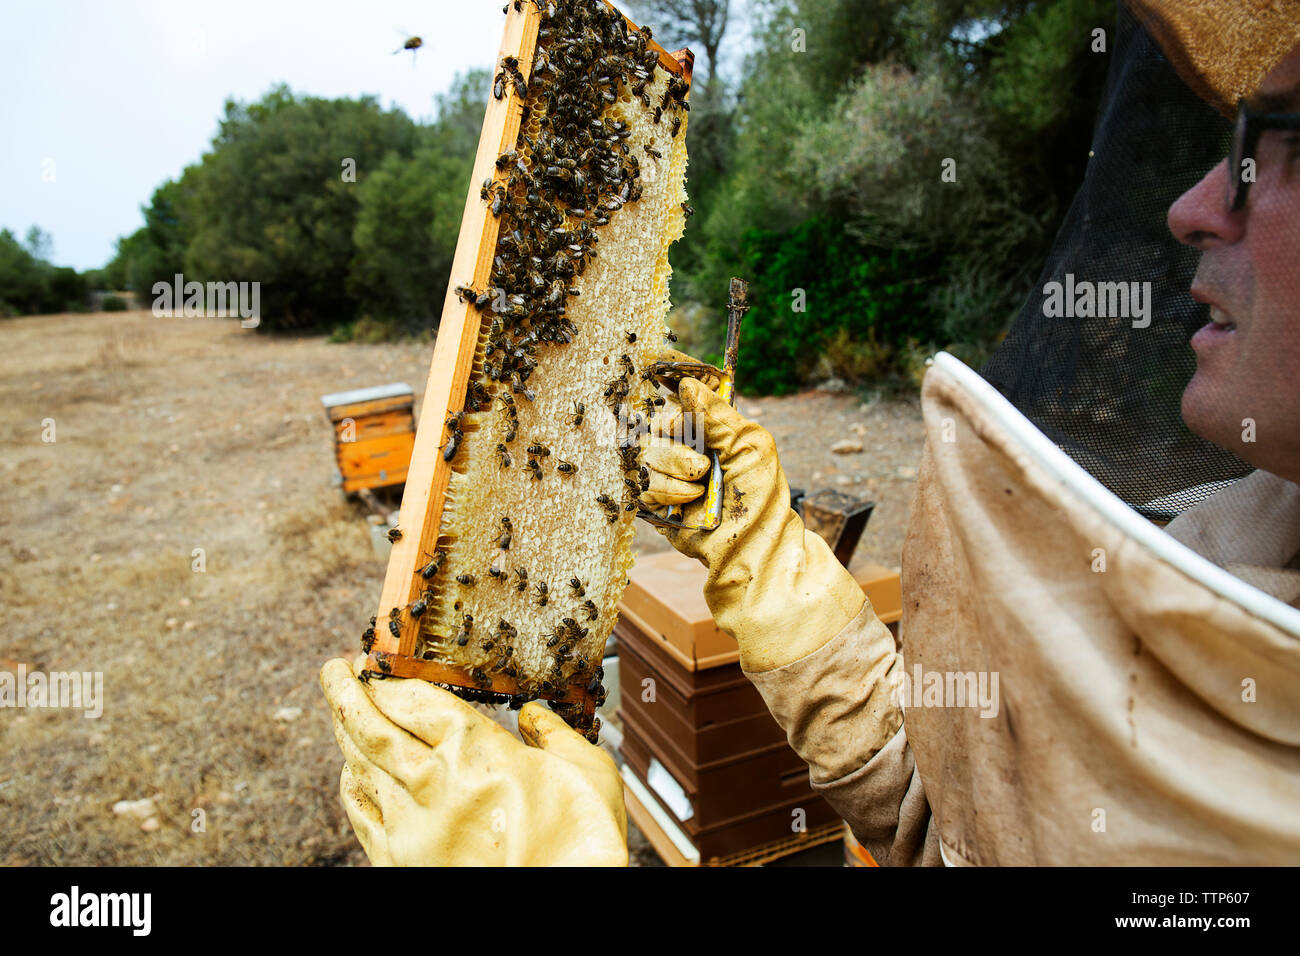 Examen du cadre de l'apiculteur ruche au champ aux beaux jours Banque D'Images